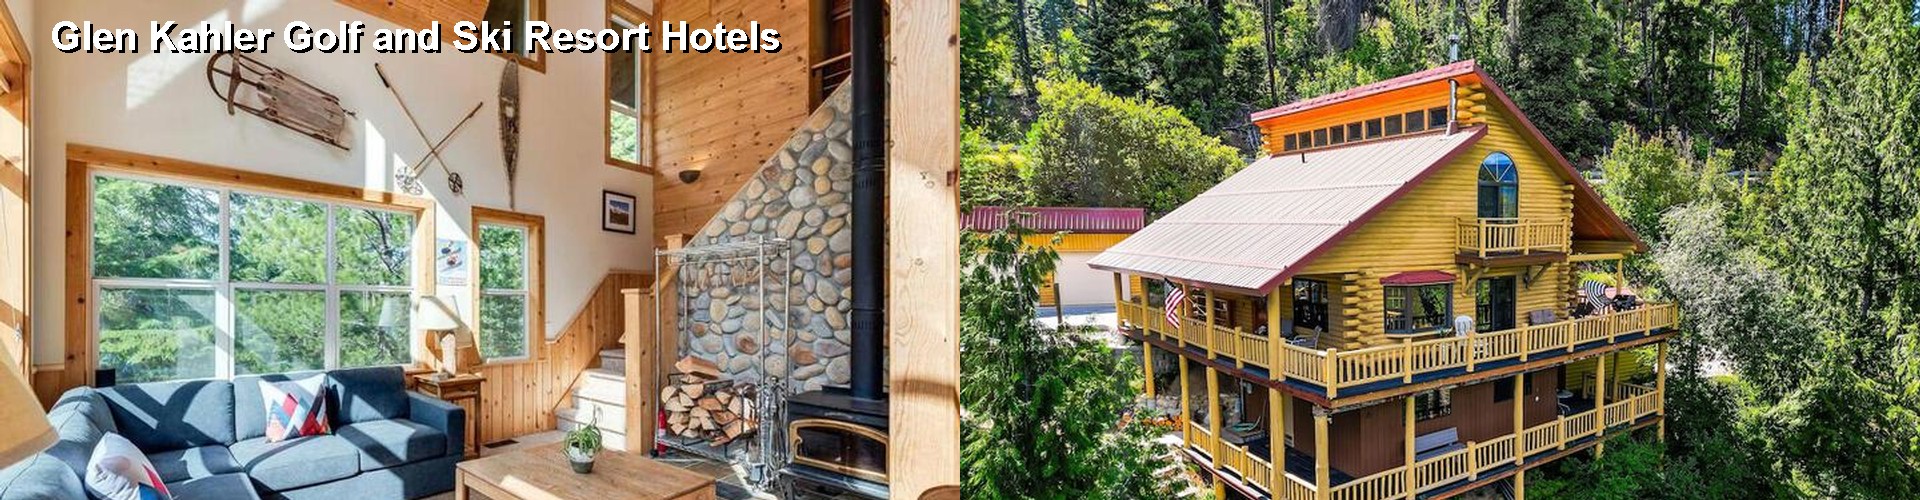 5 Best Hotels near Glen Kahler Golf and Ski Resort